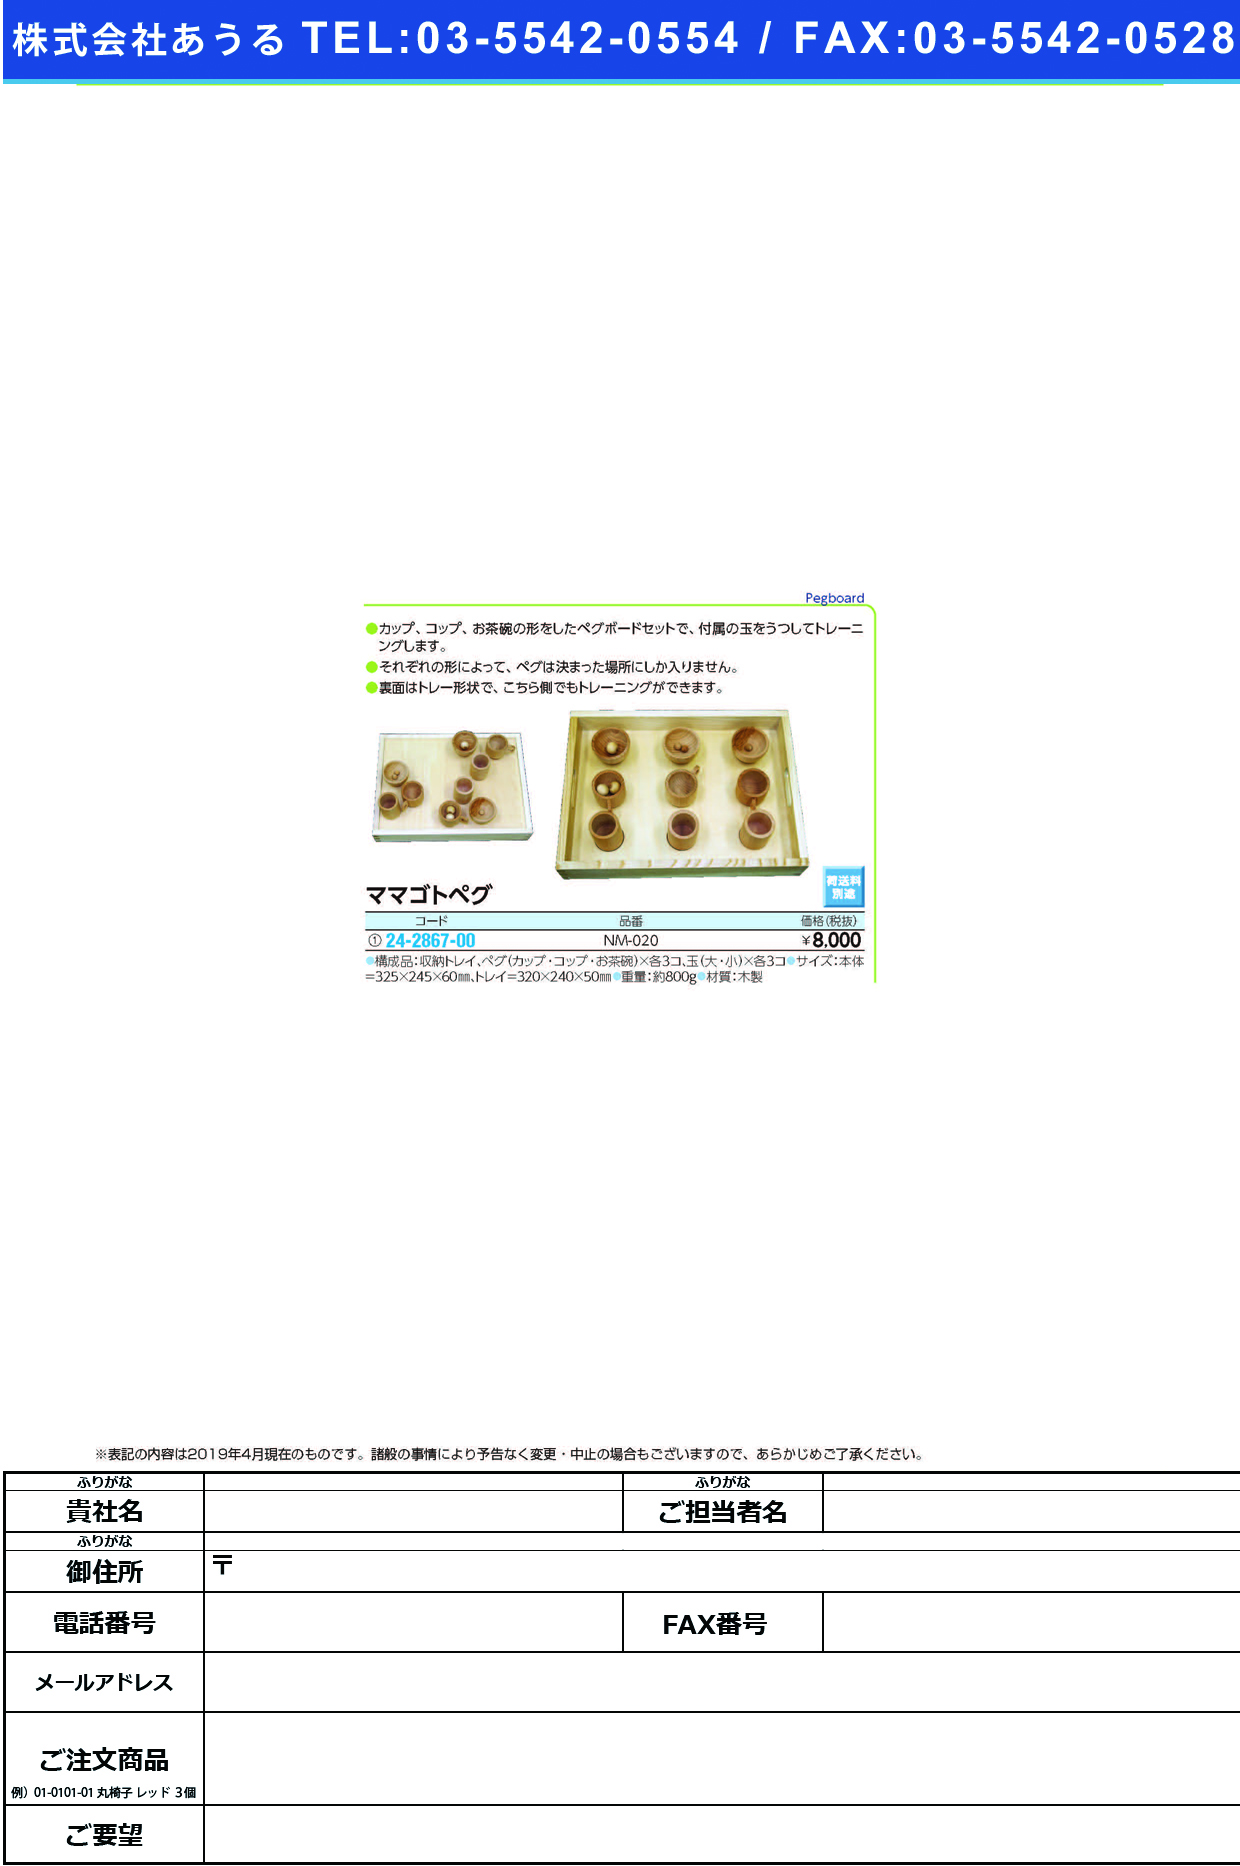 (24-2867-00)ママゴトペグ NM-020(M16181) ﾏﾏｺﾞﾄﾍﾟｸﾞ【1組単位】【2019年カタログ商品】